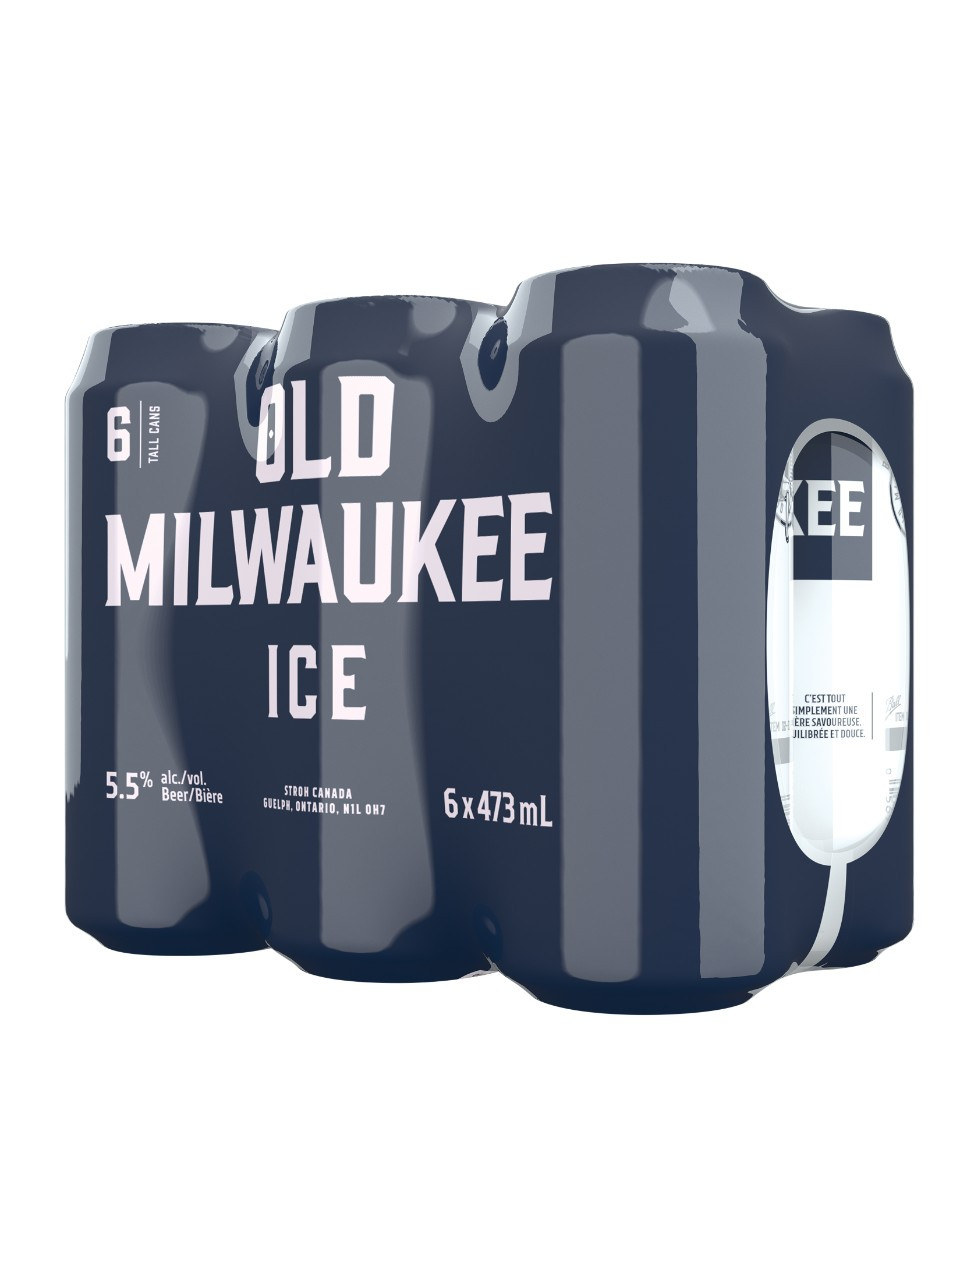 Old milwaukee ice  6 x 473 ml